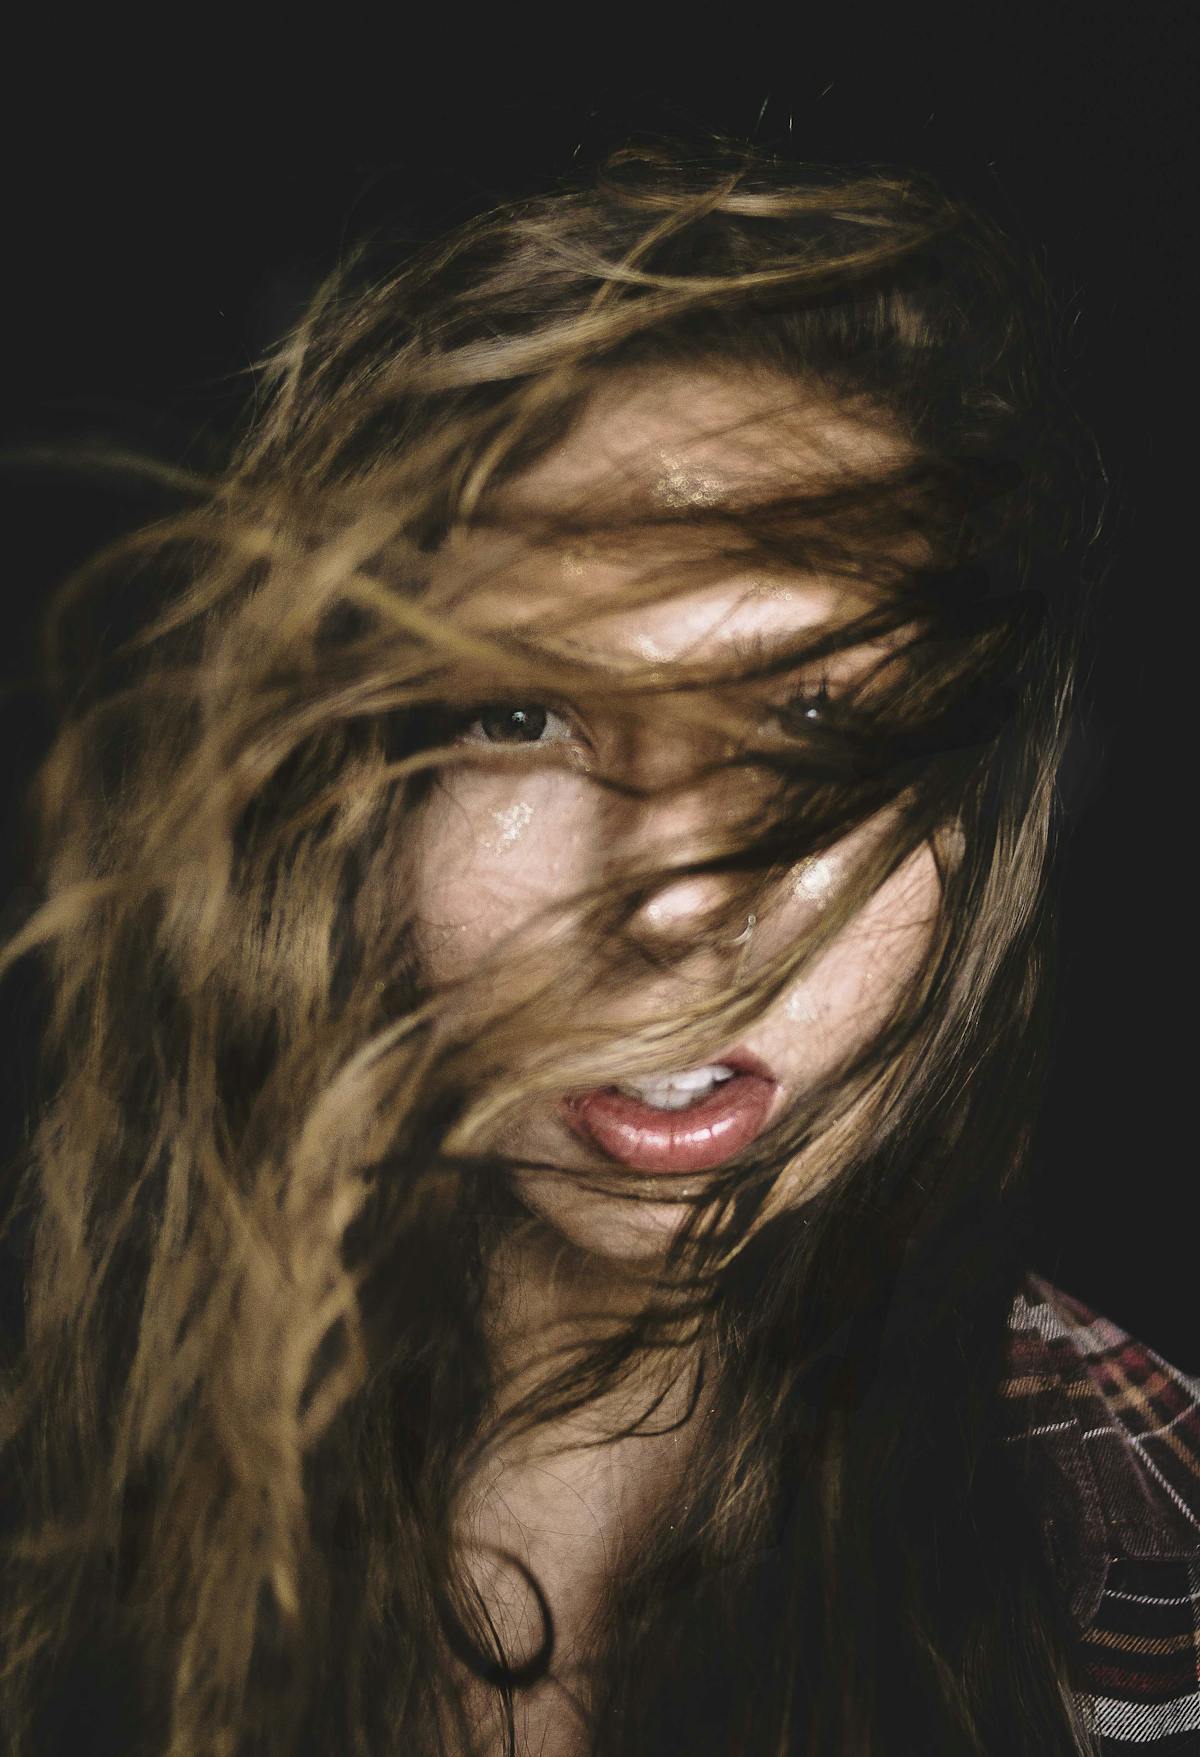 年輕女性吹頭髮圖片素材-JPG圖片尺寸6240 × 4160px-高清圖案501071808-zh.lovepik.com